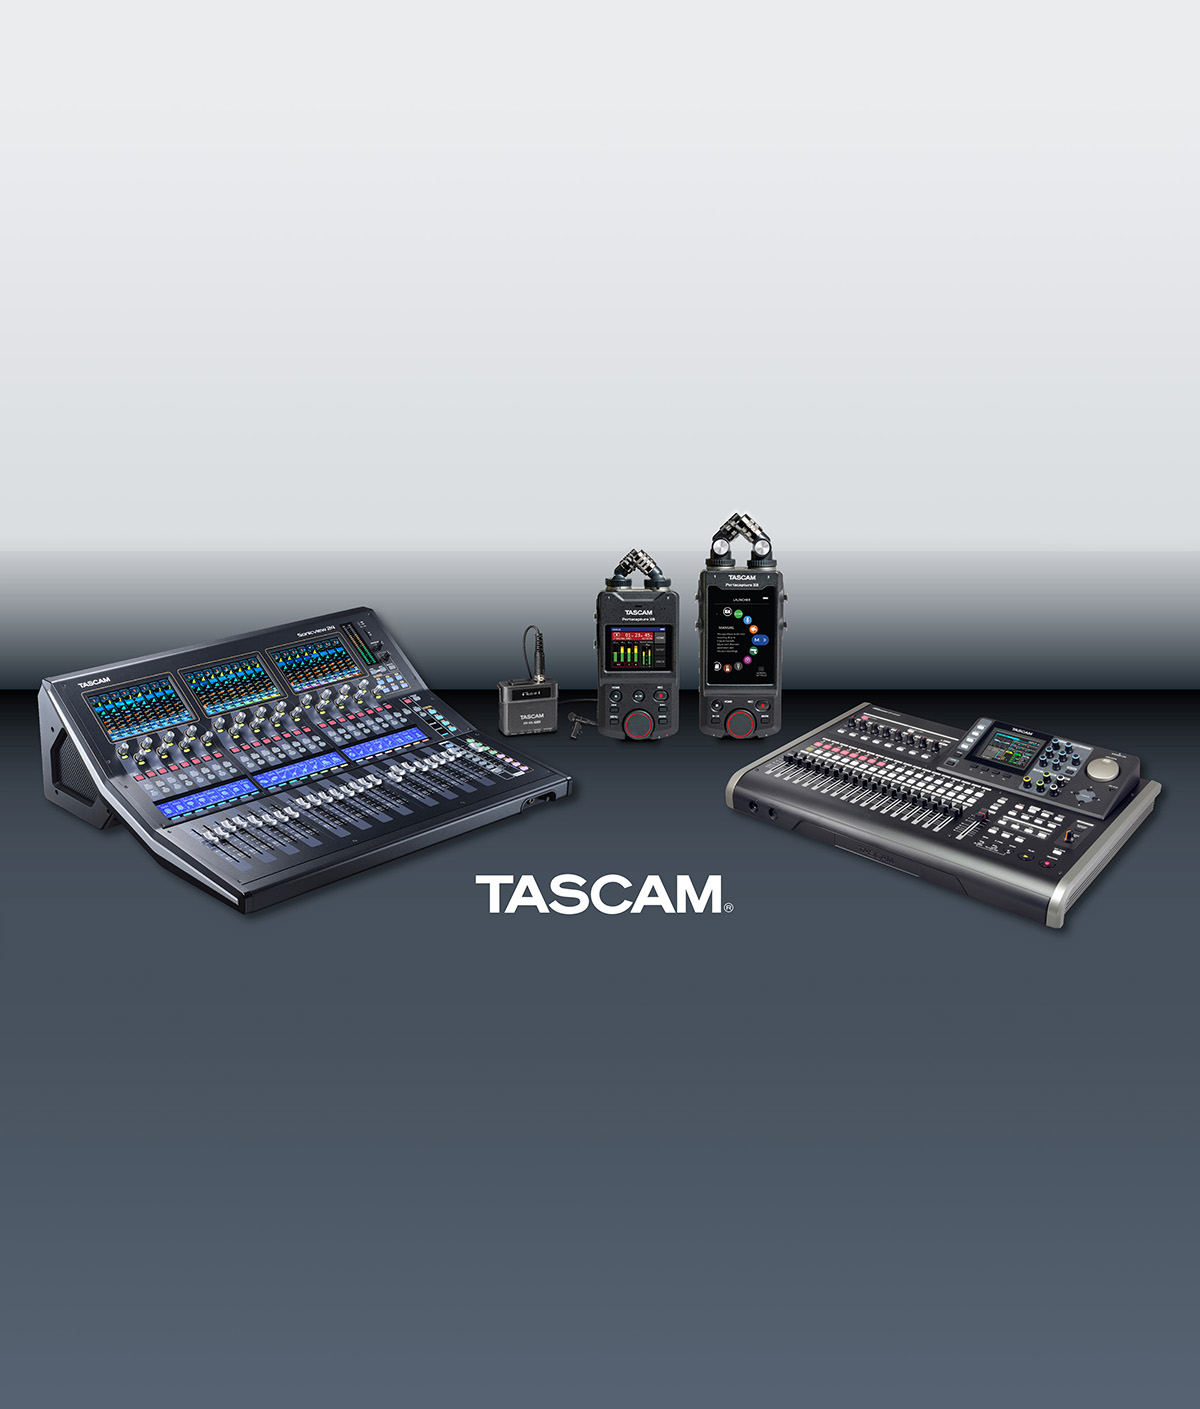 TASCAM U.S. Announces New Warranty Program